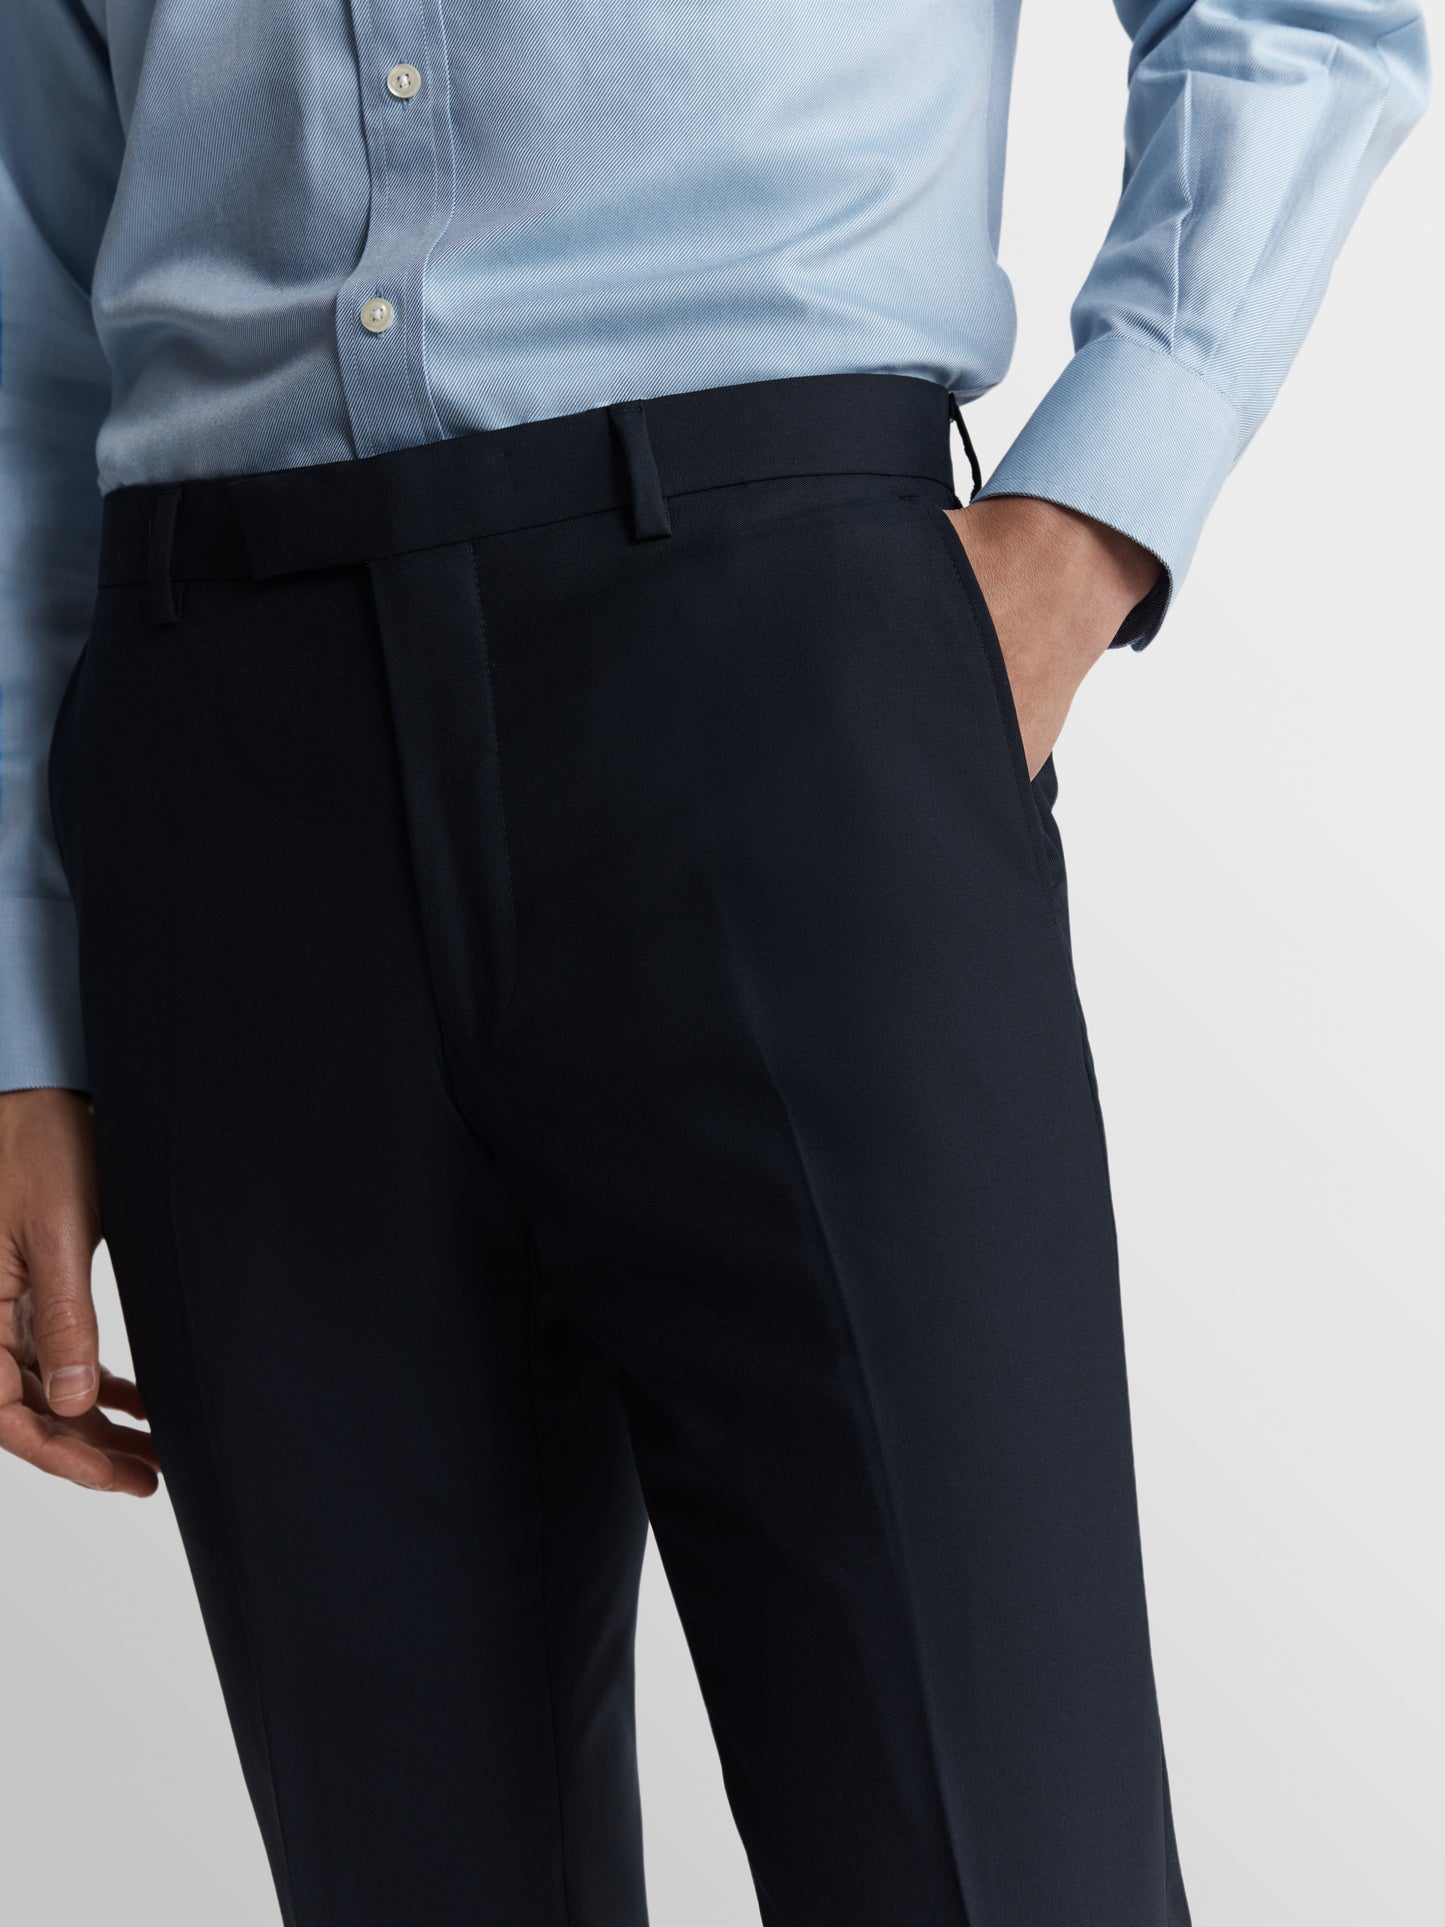 Aldgate Barberis Slim Fit Navy Trousers Plus Size